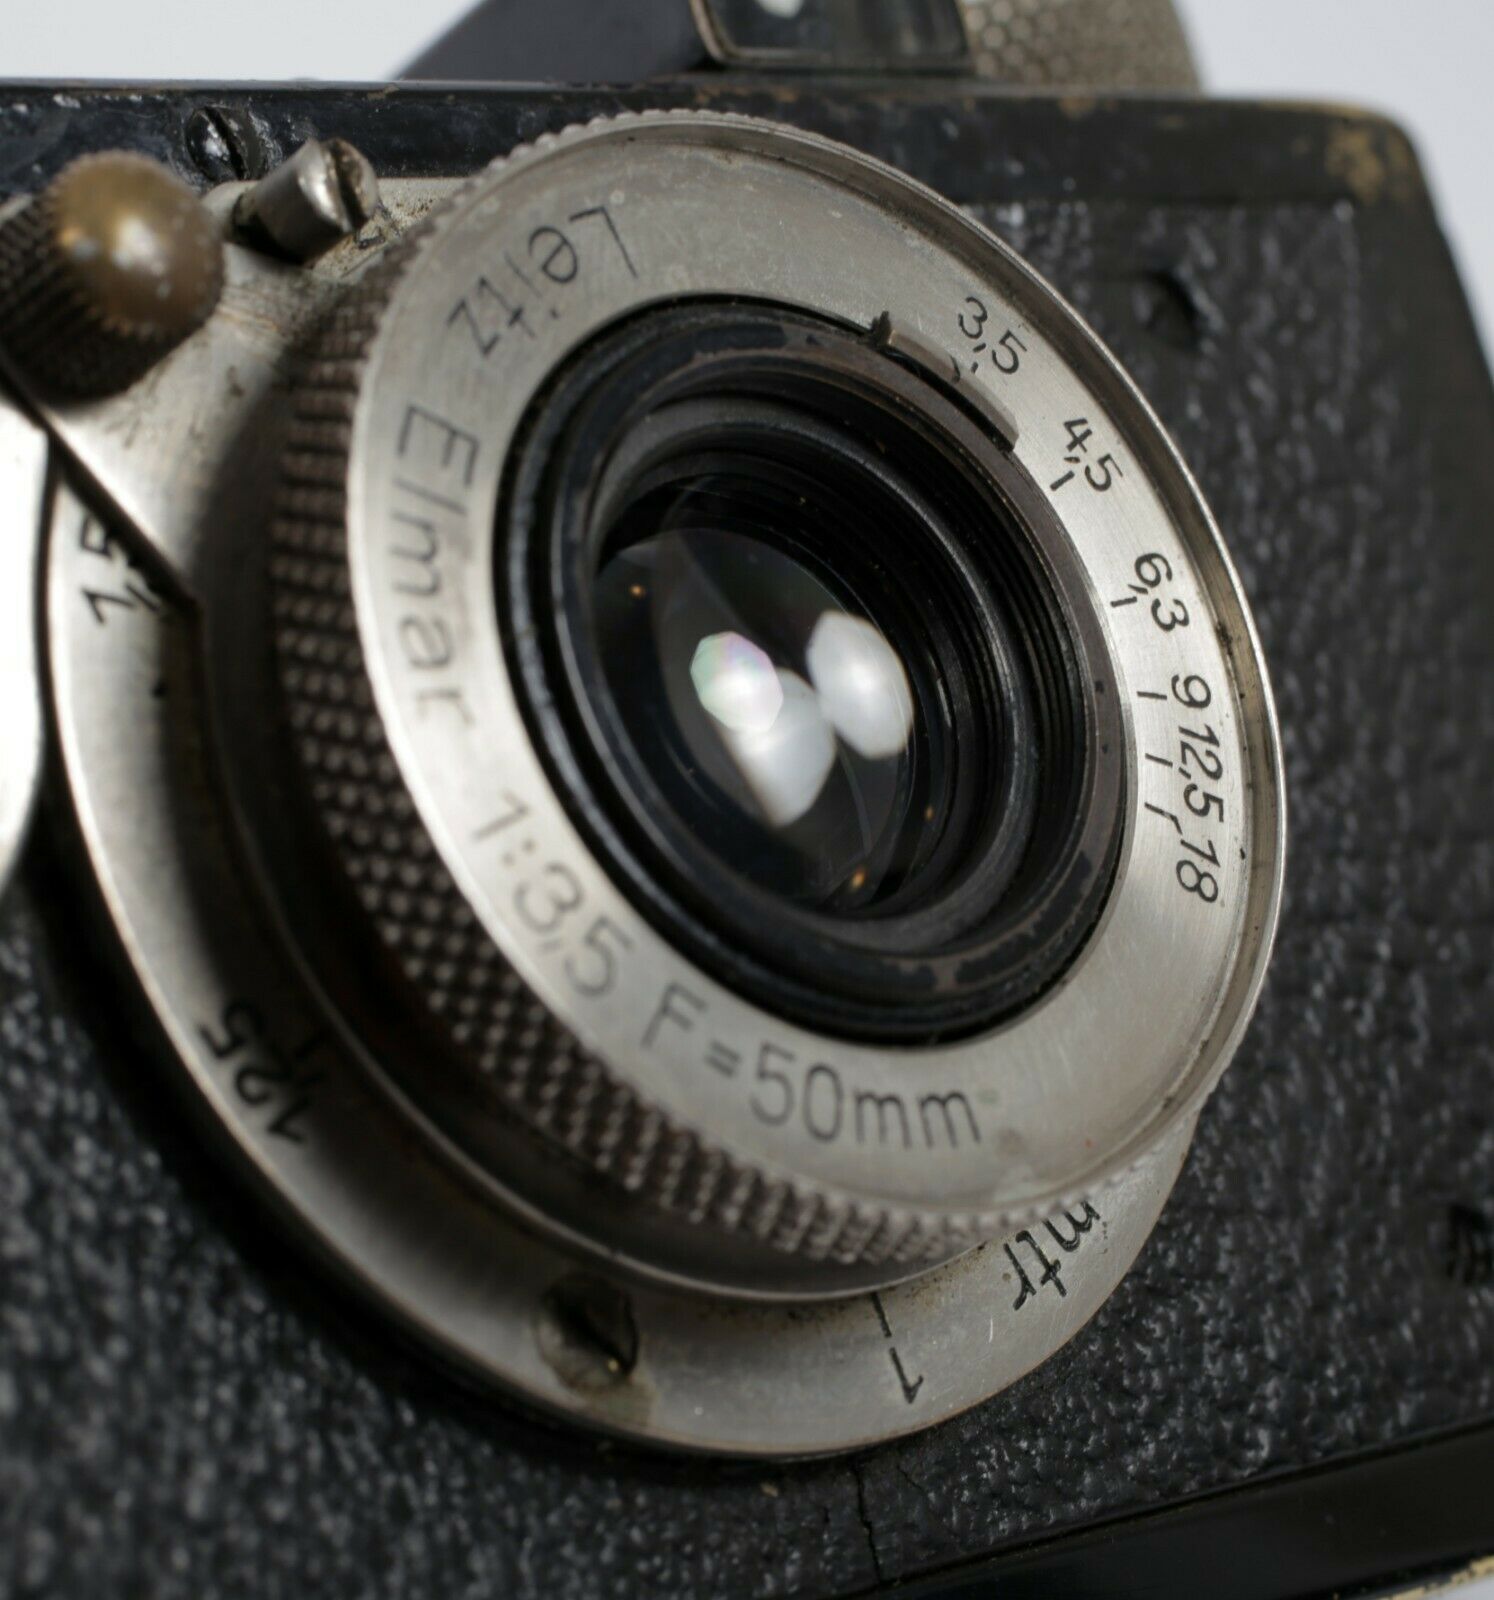 Leica IA 35mm Film Camera leitz rangefinder Elmar 50mm F3.5 lens (AS IS -  READ)